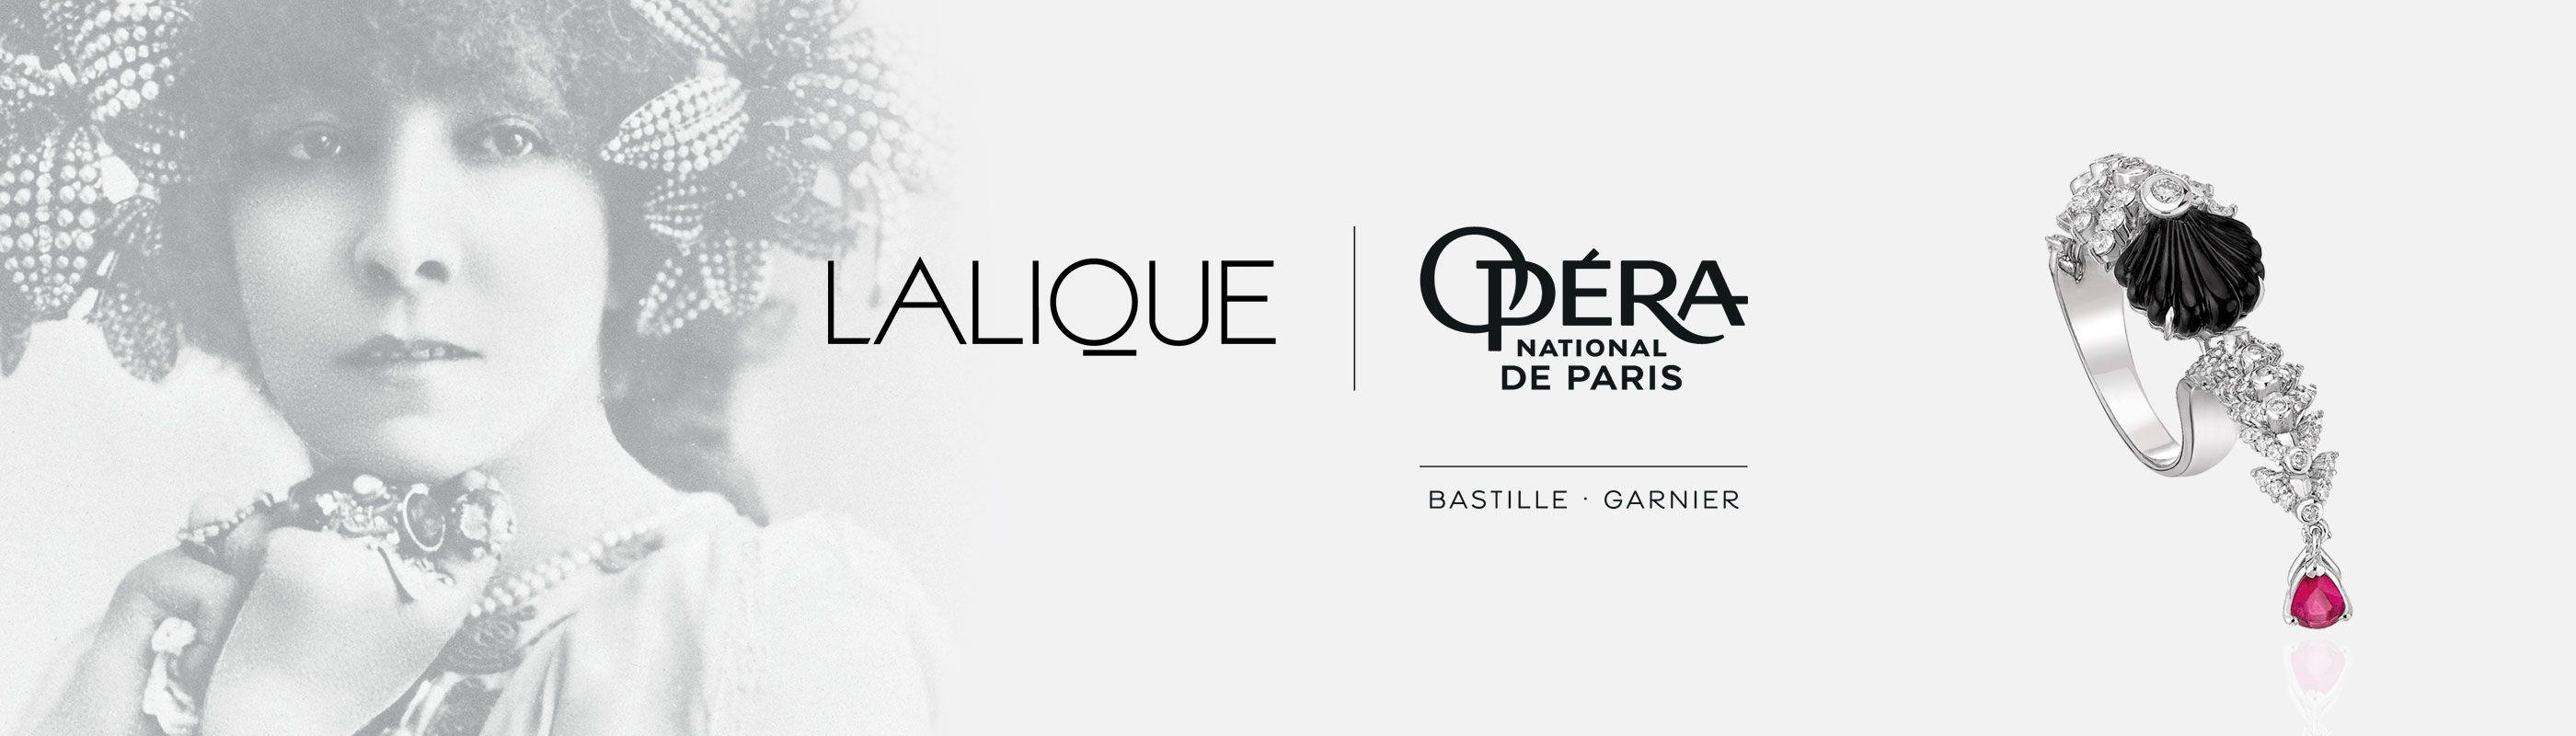 Lalique Logo - Lalique & Opéra national de Paris collaboration | Lalique